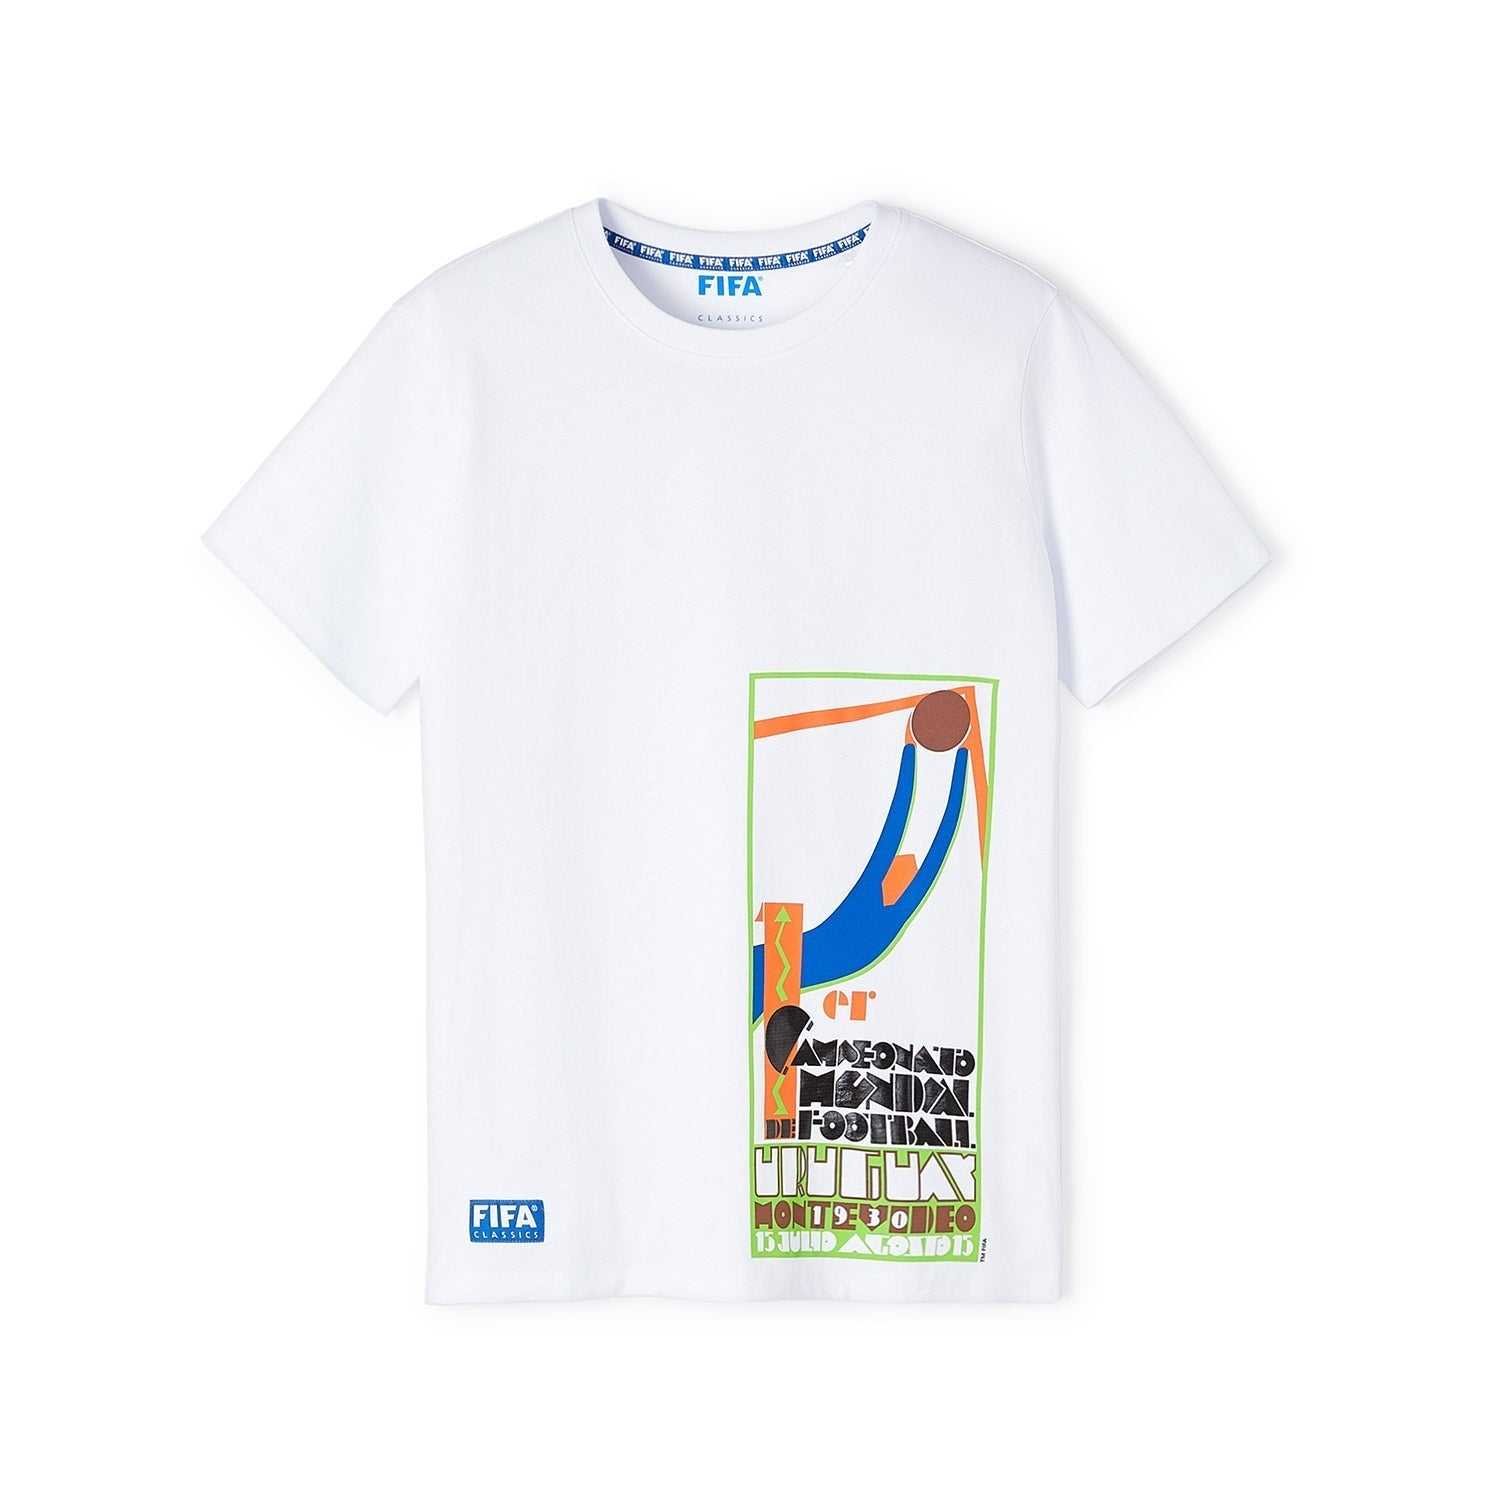 FIFA Rewind Uruguay '30 - Offset Poster T-Shirt